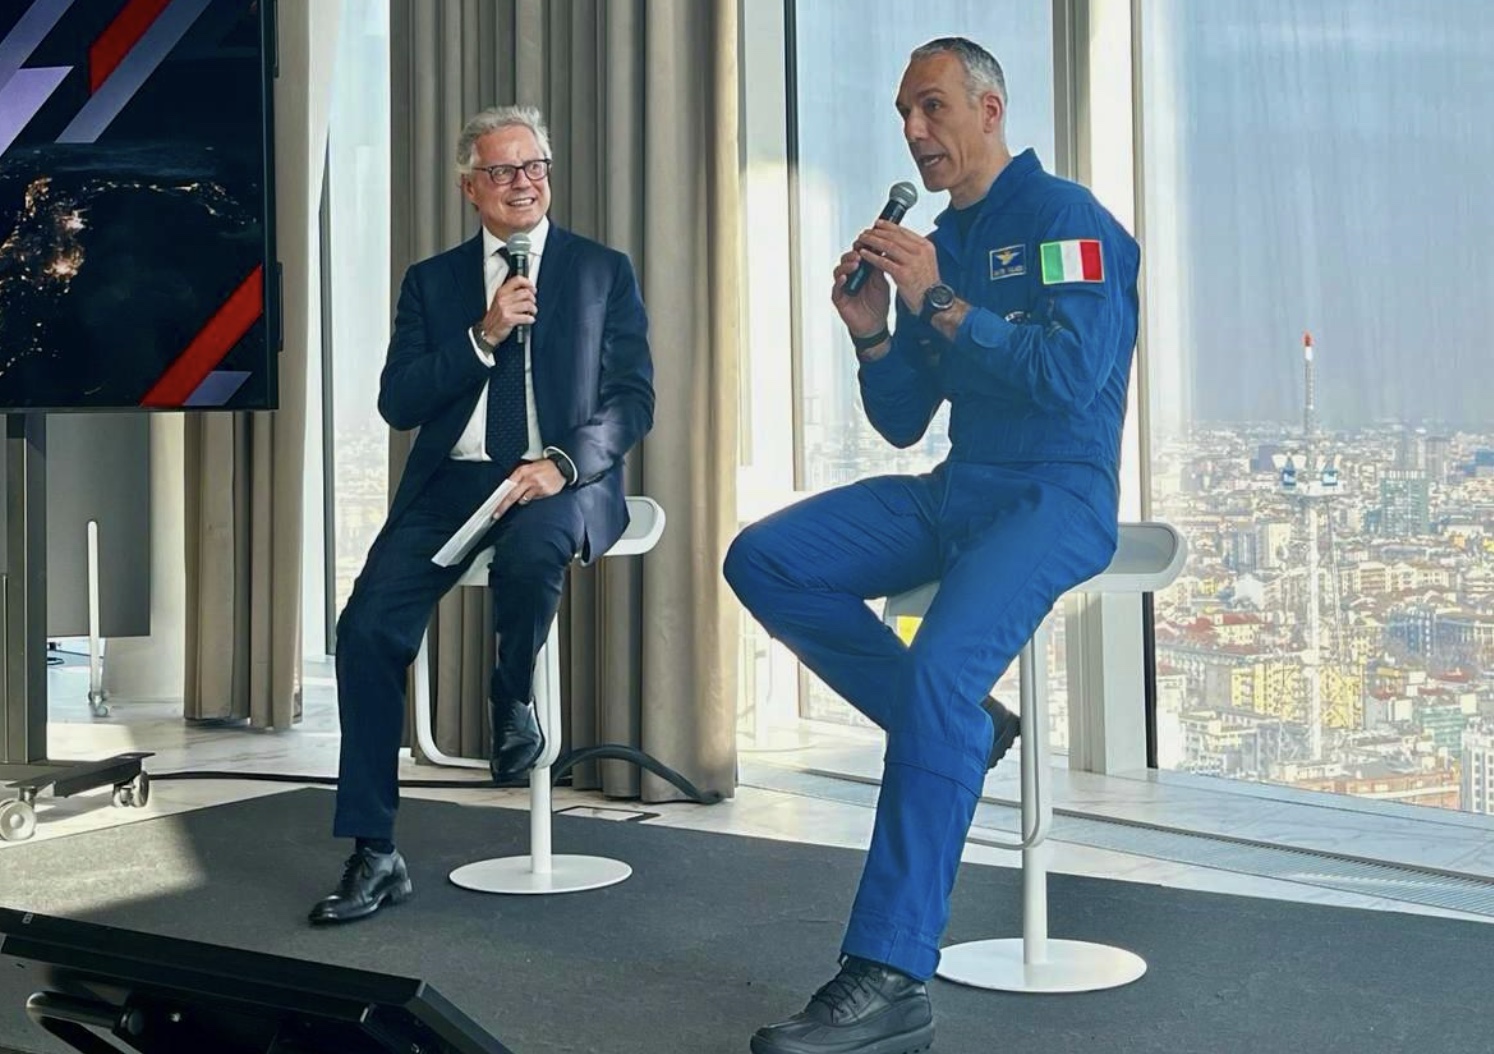 Aeronautica Militare și PwC Italia: Zborul spațial uman ca o oportunitate pentru companii în noua economie spațială